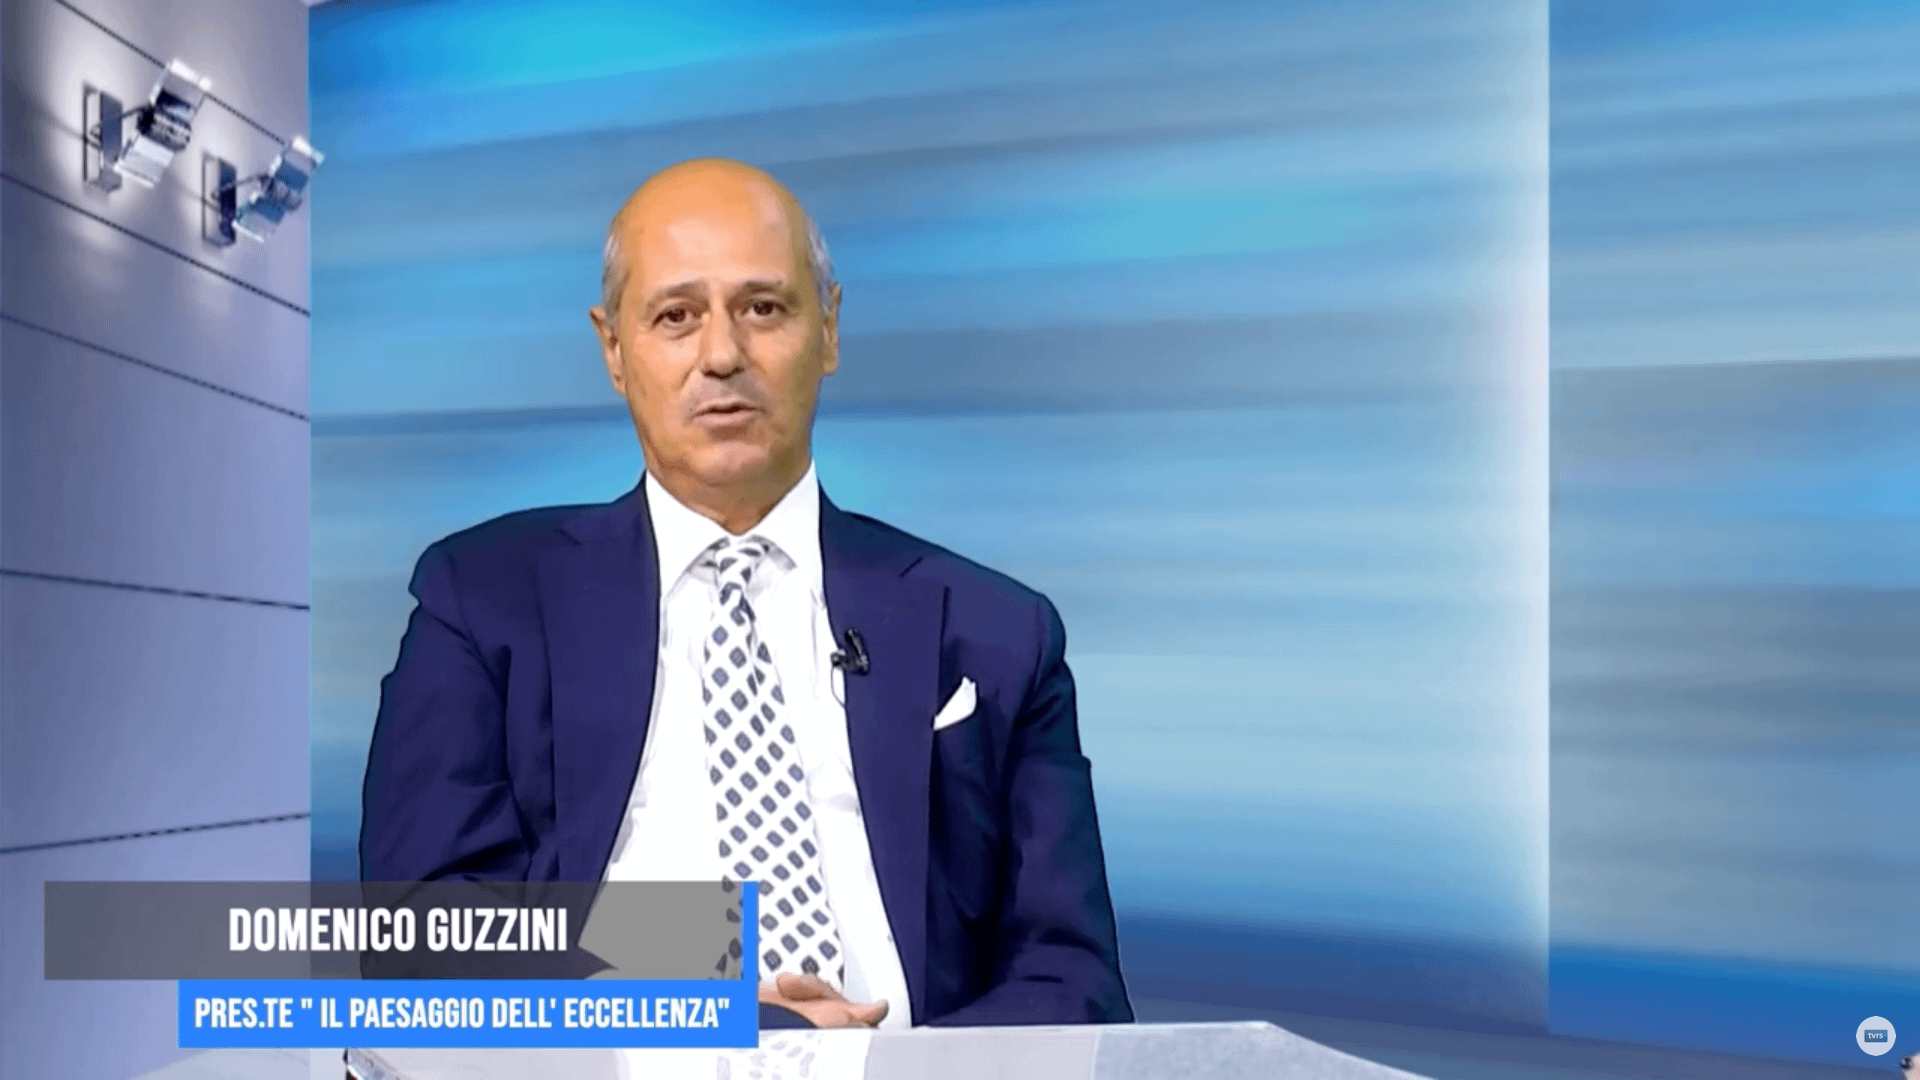 Intervista al Presidente Domenico Guzzini su TVRS